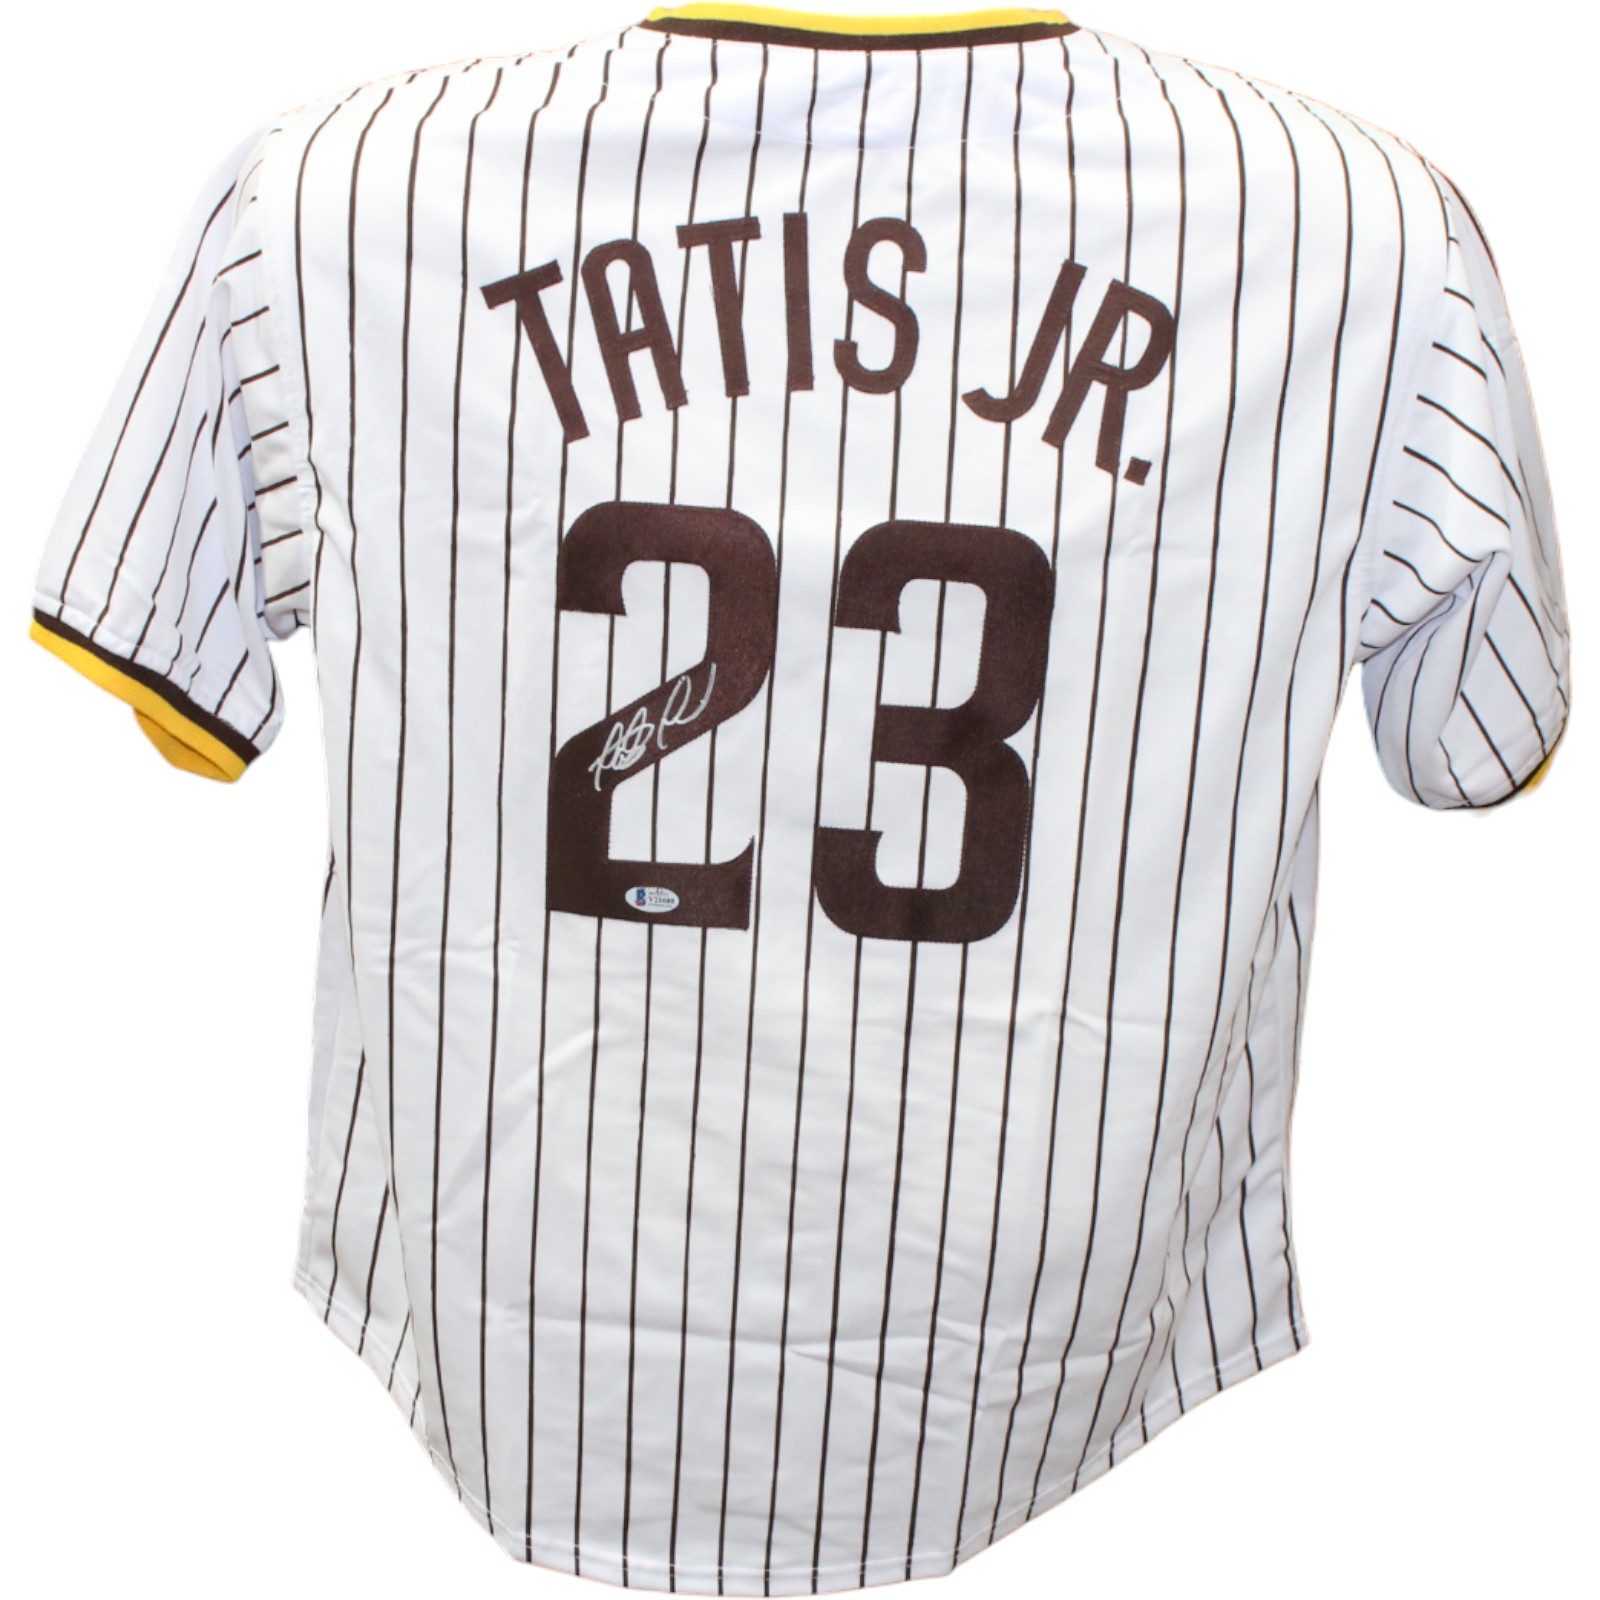 Fernando Tatis Jr. Autographed/Signed Pro Style White jersey JSA